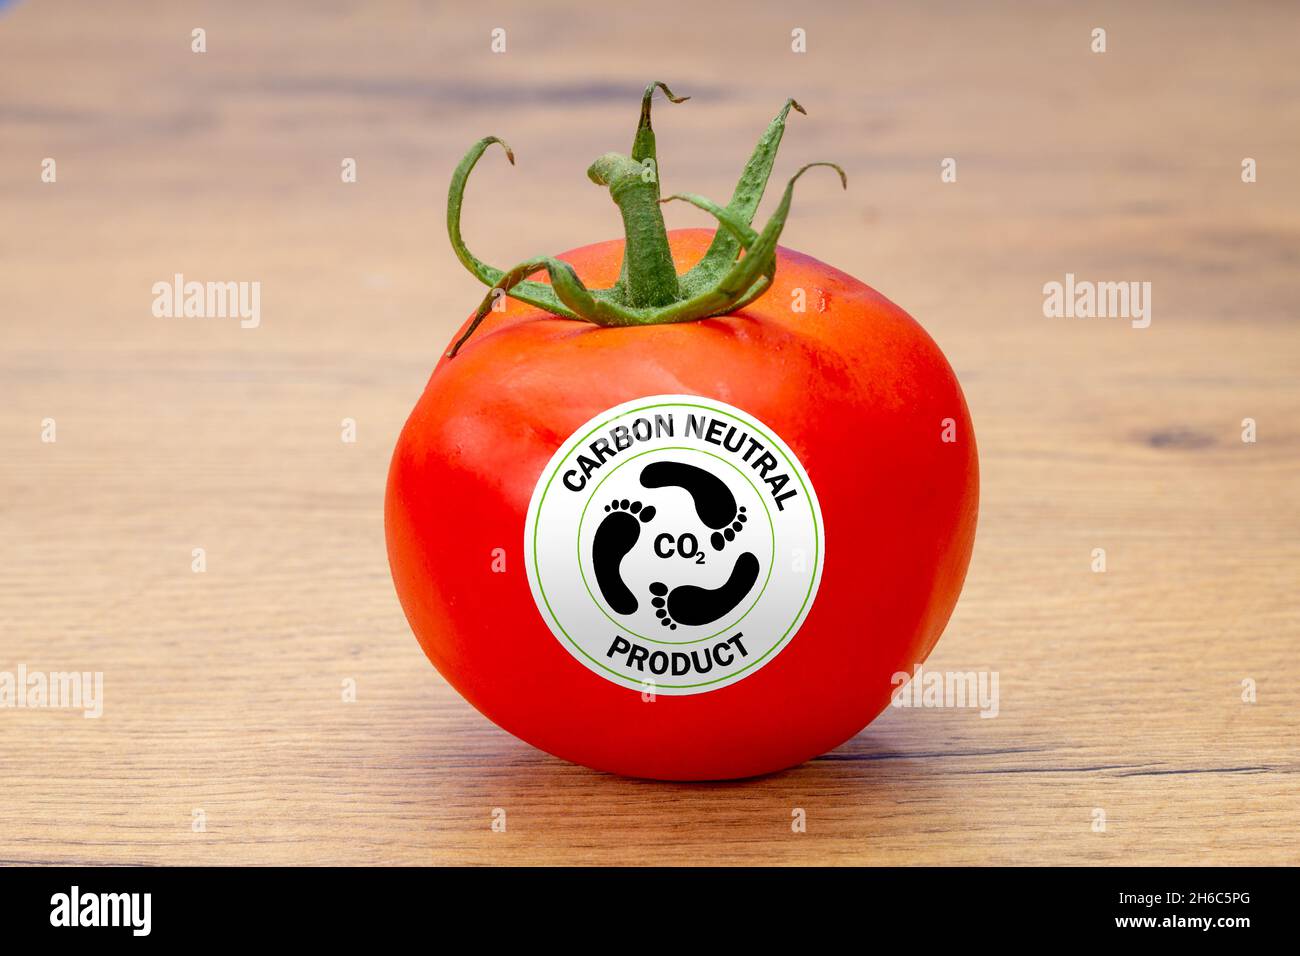 tomate con etiqueta de producto neutra en carbono, etiquetas de consumo en alimentos para ayudar a un consumo sostenible y ético Foto de stock